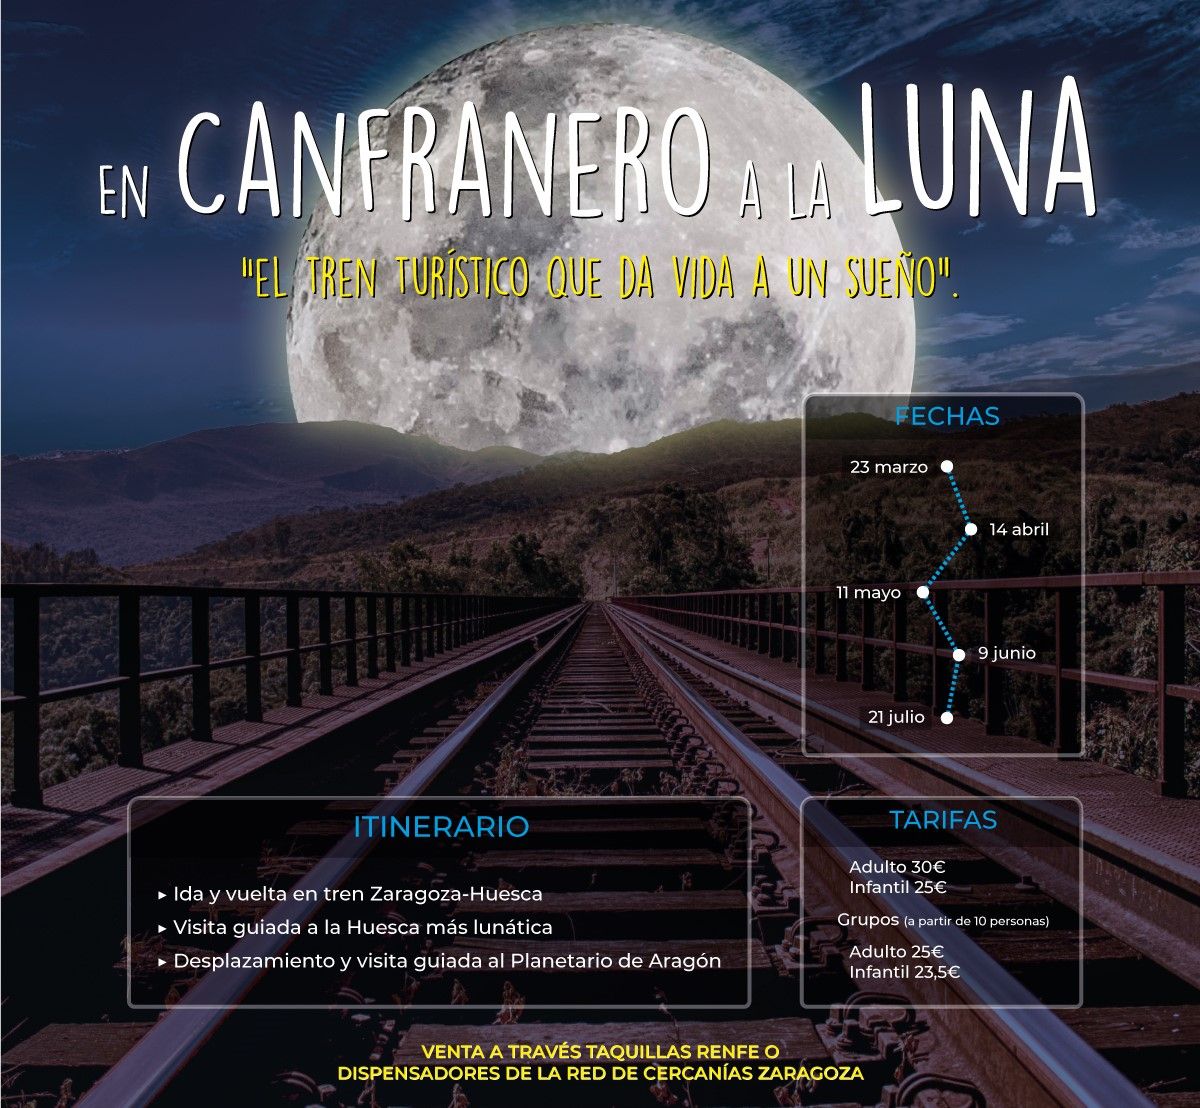 tren canfranero (www.renfe.com)